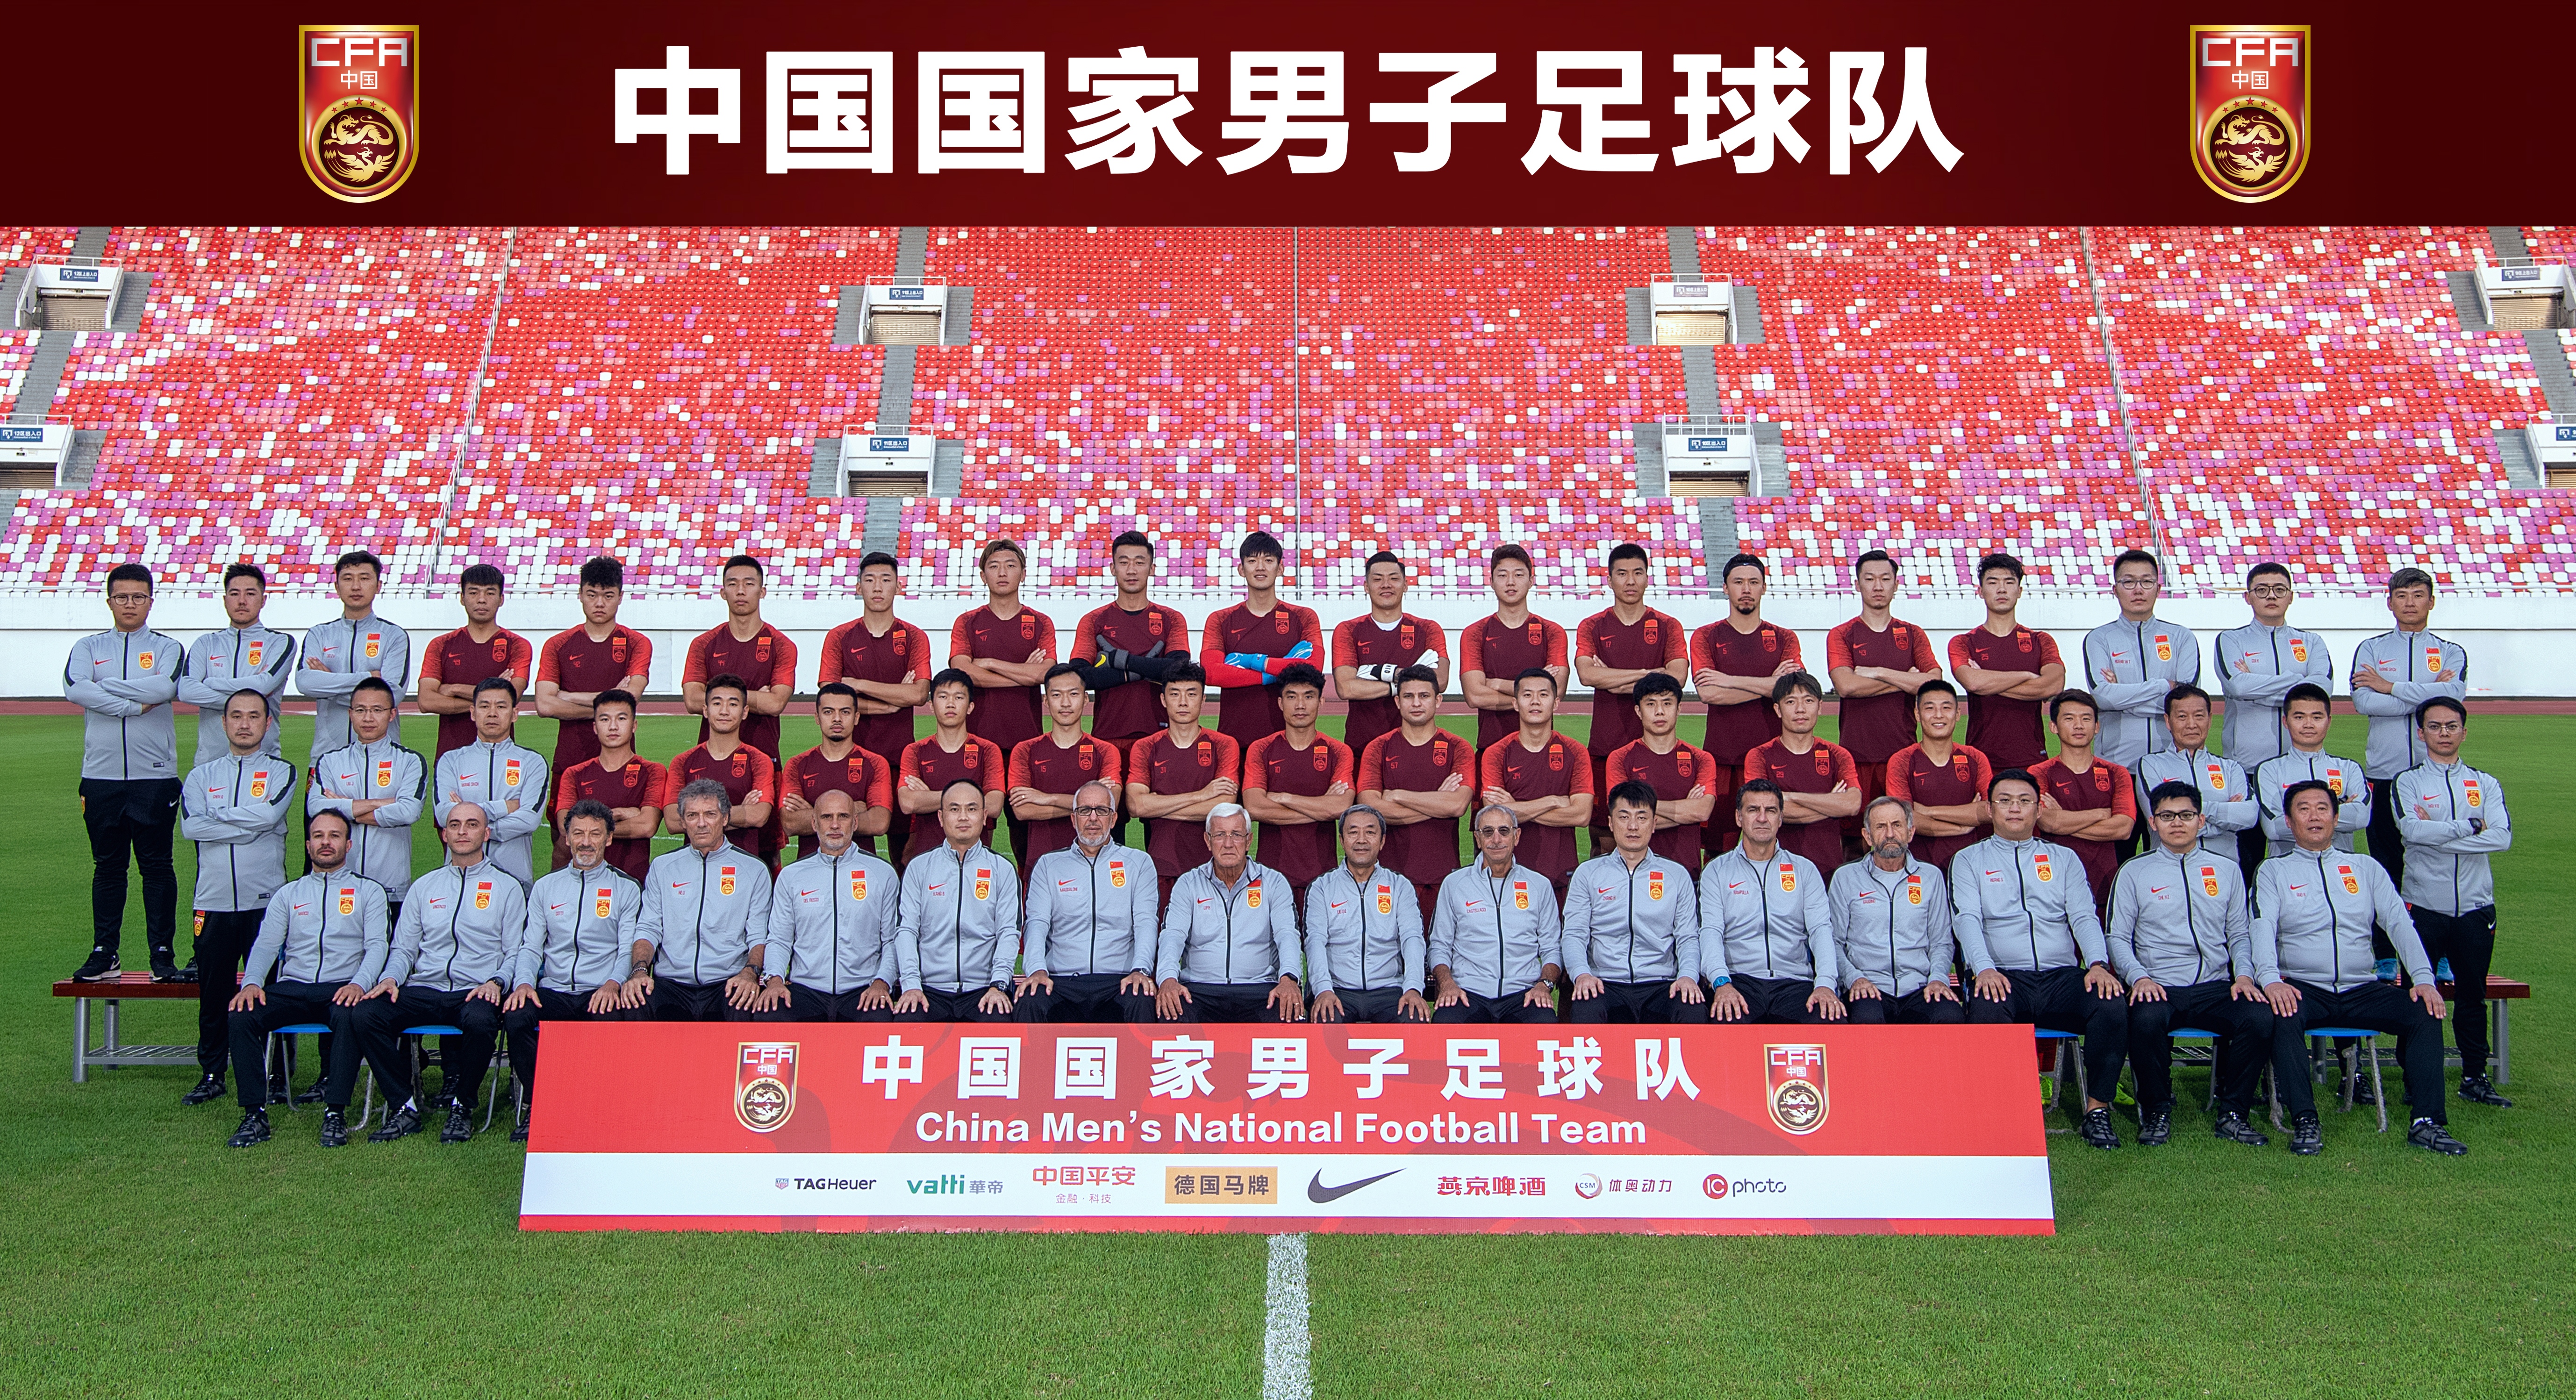 昨天,中国男足国家队最新的全家福出炉,合影包含了26名球员和28名